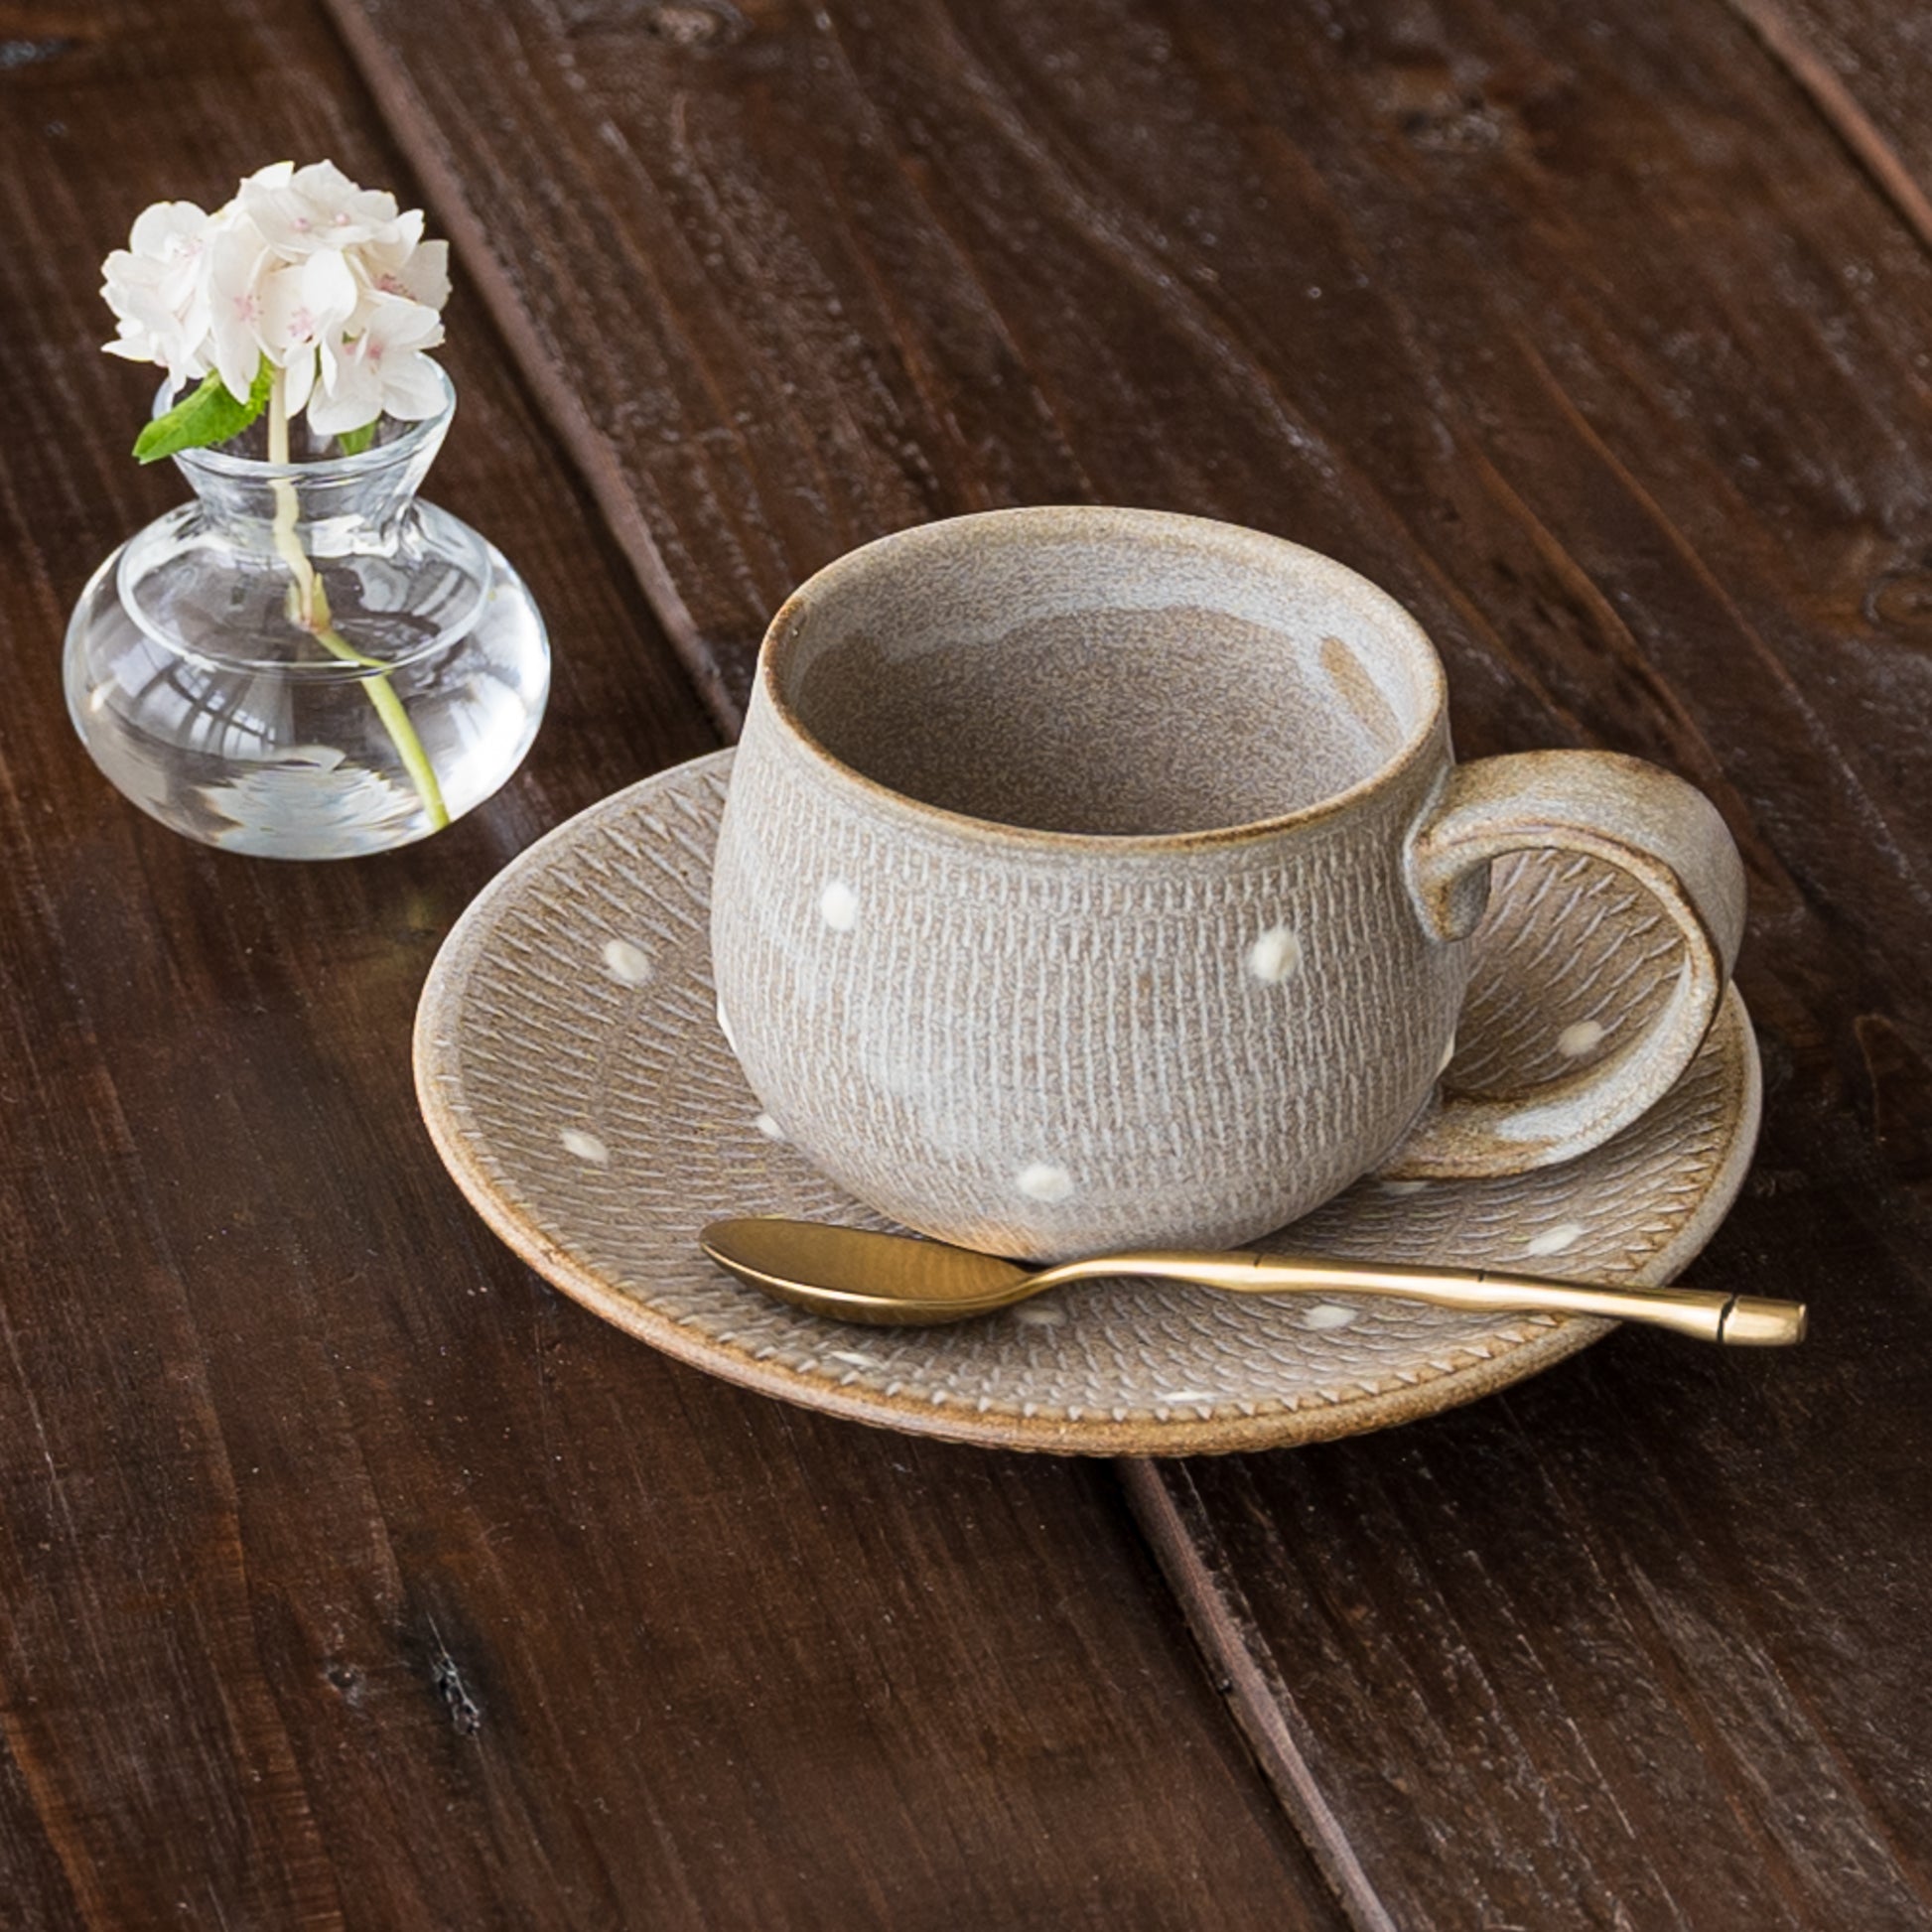 来客のおもてなしにもぴったりな小石原焼翁明窯元のドット柄のコーヒーカップと小皿